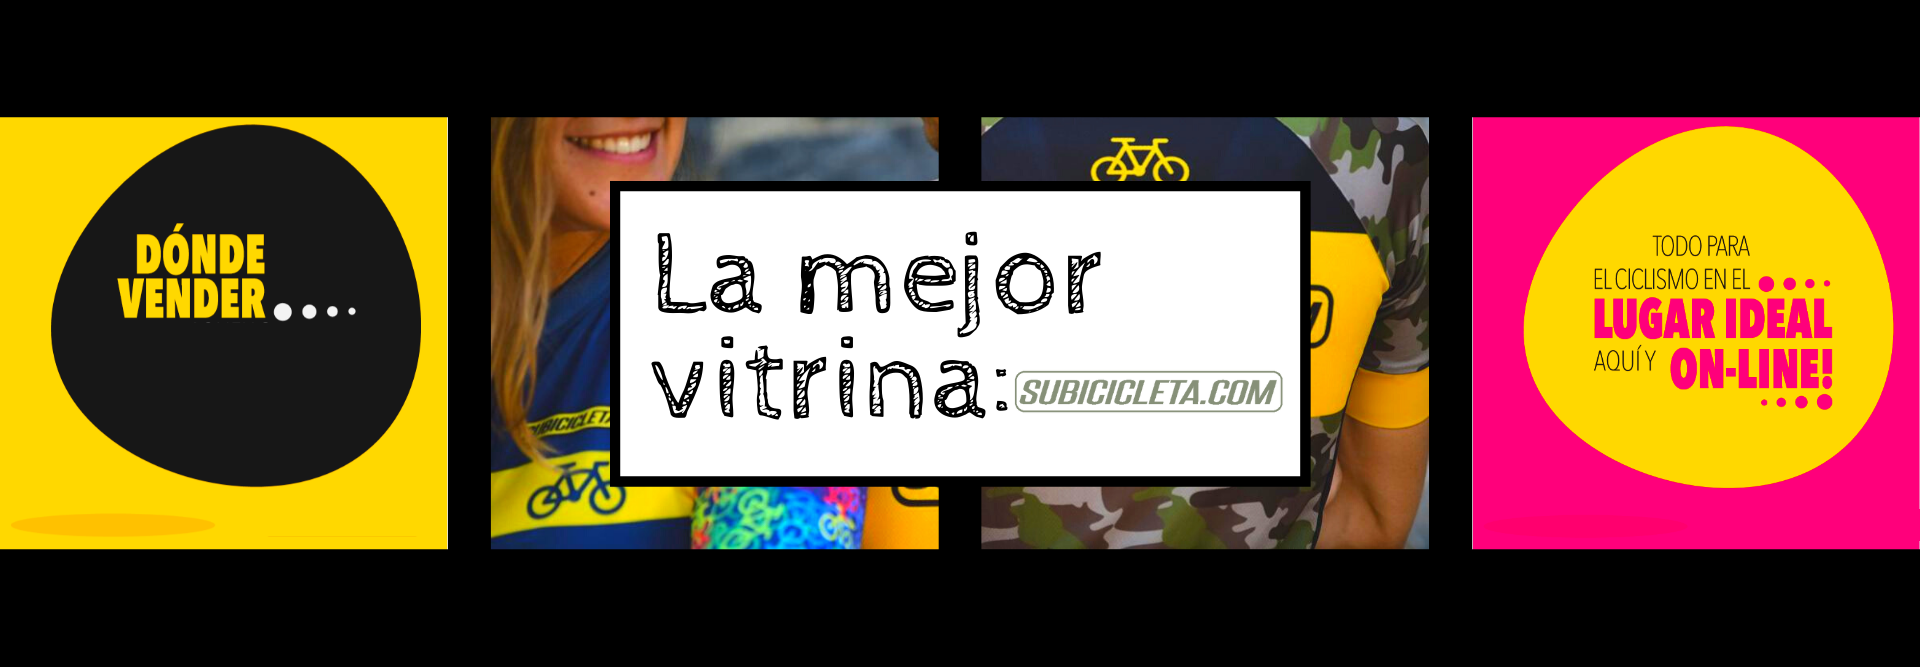 subicicleta.com vitrina online